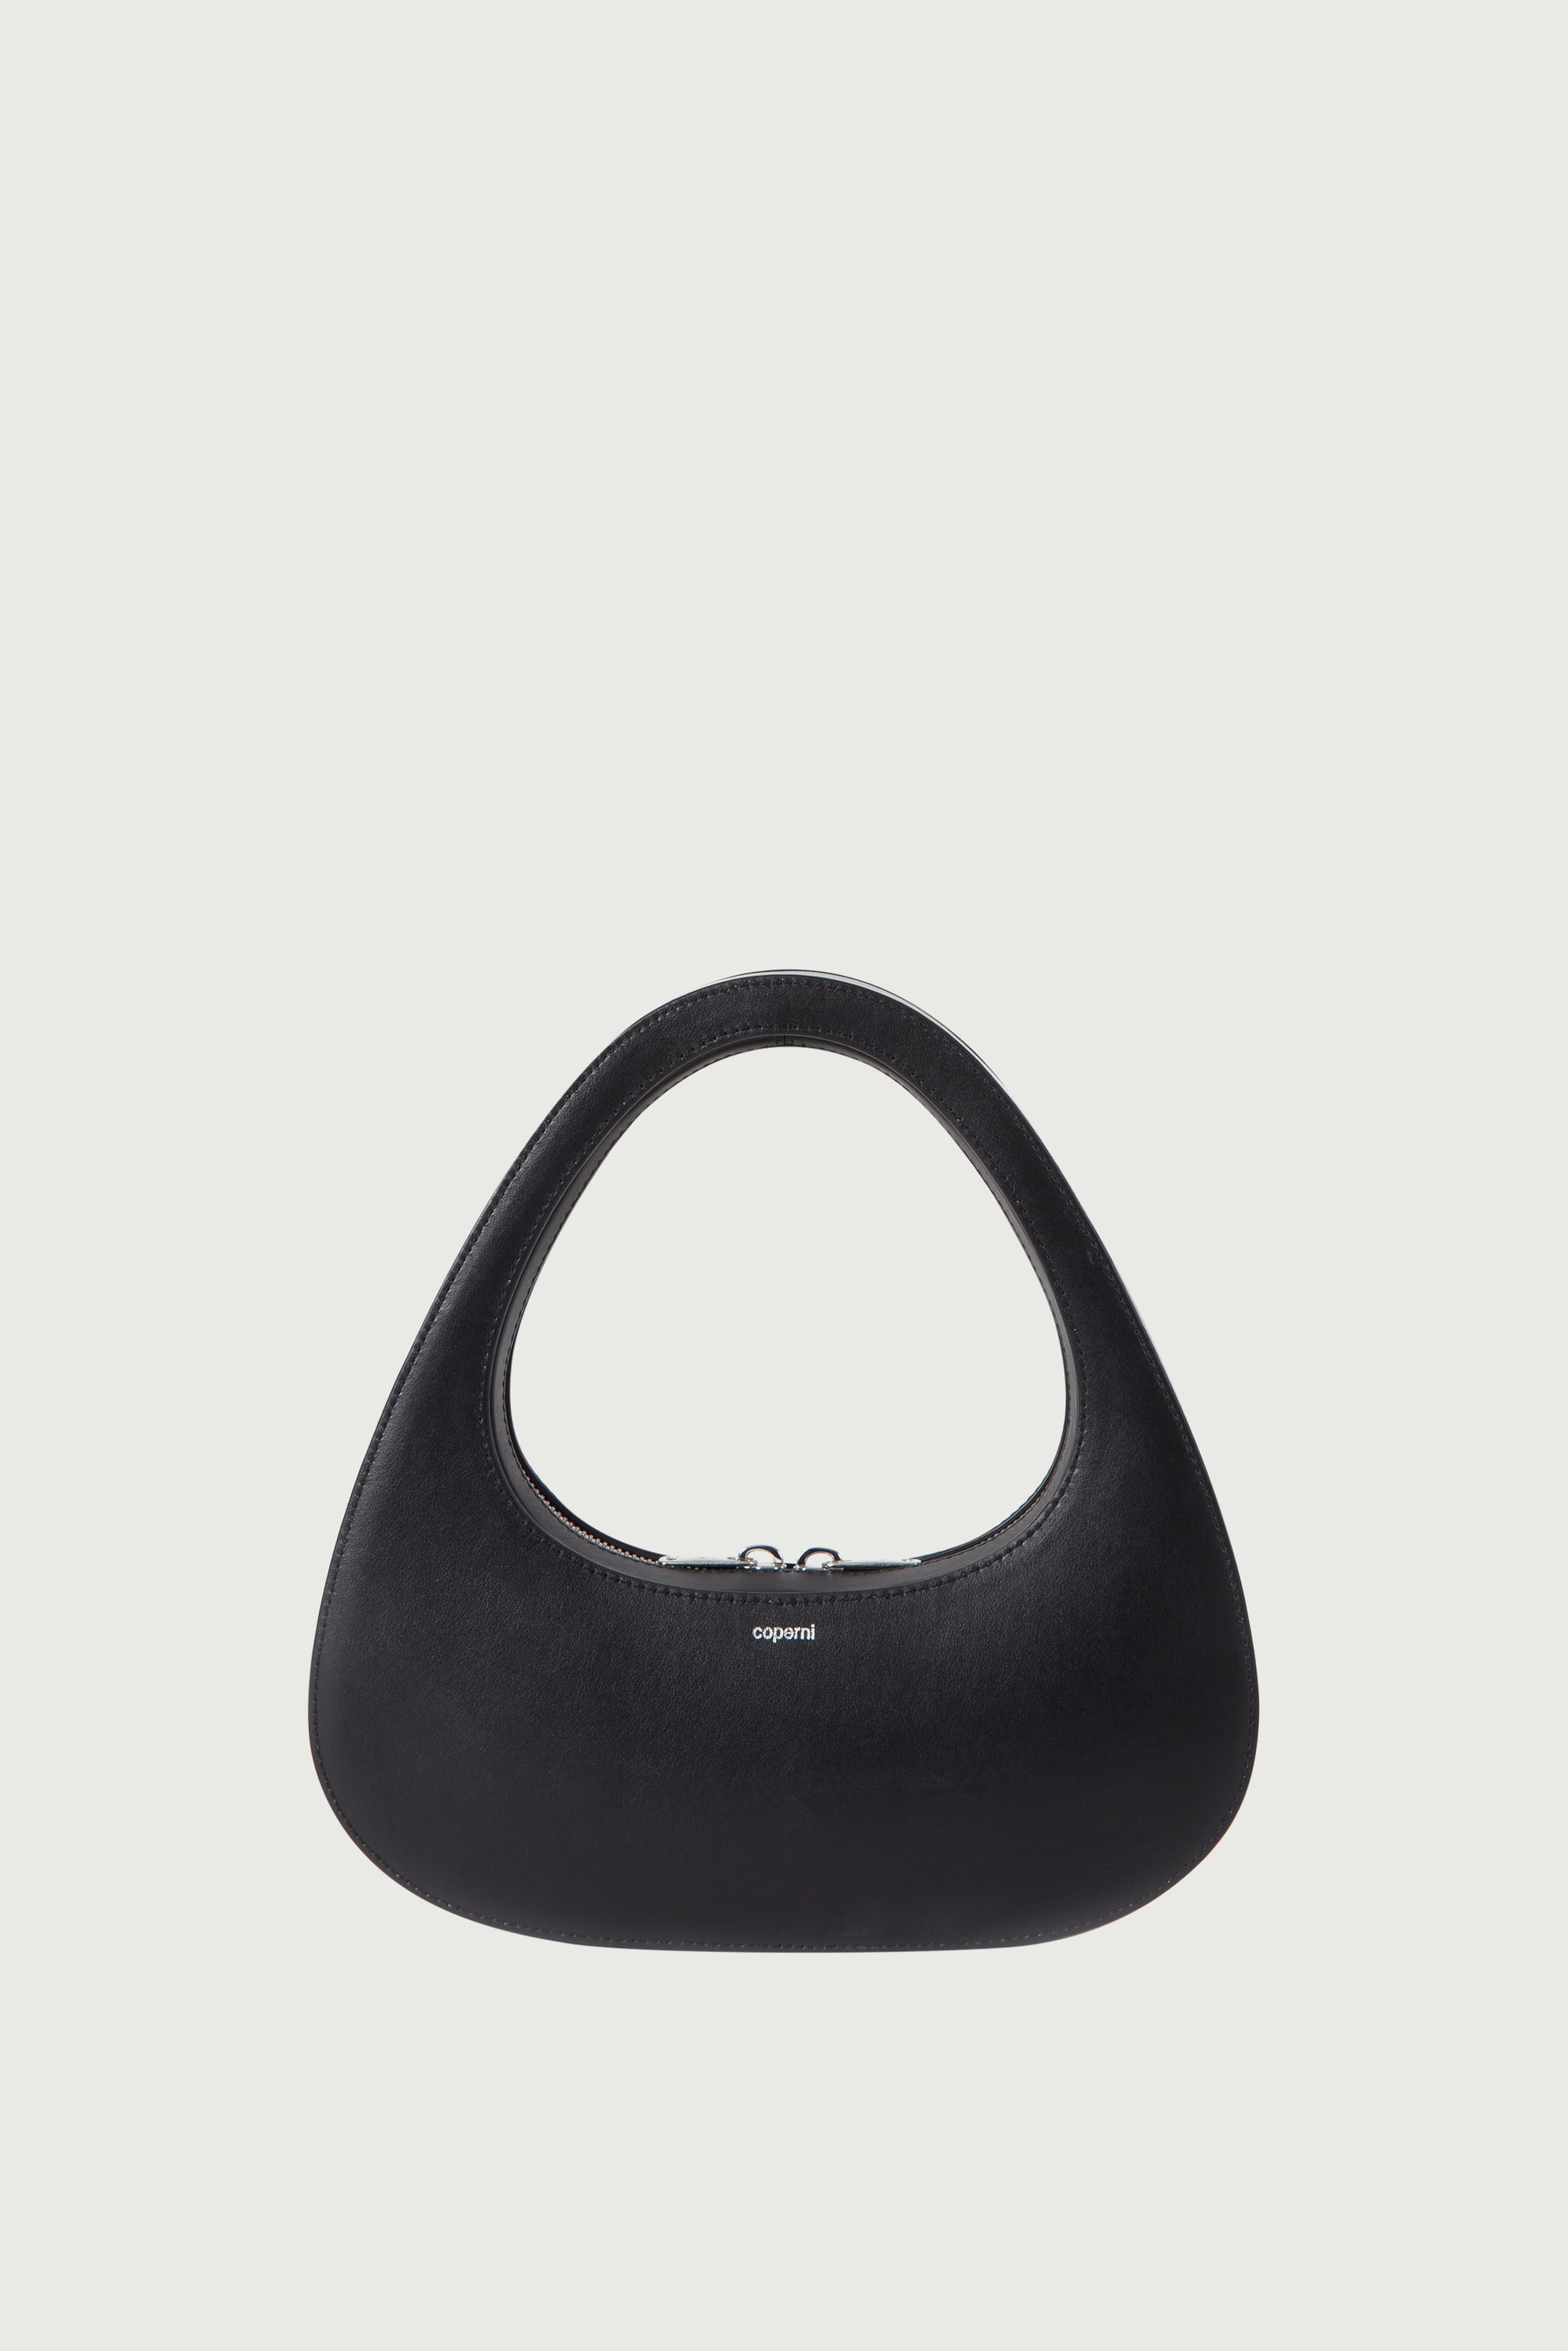 Baguette - Black FF canvas bag | Fendi